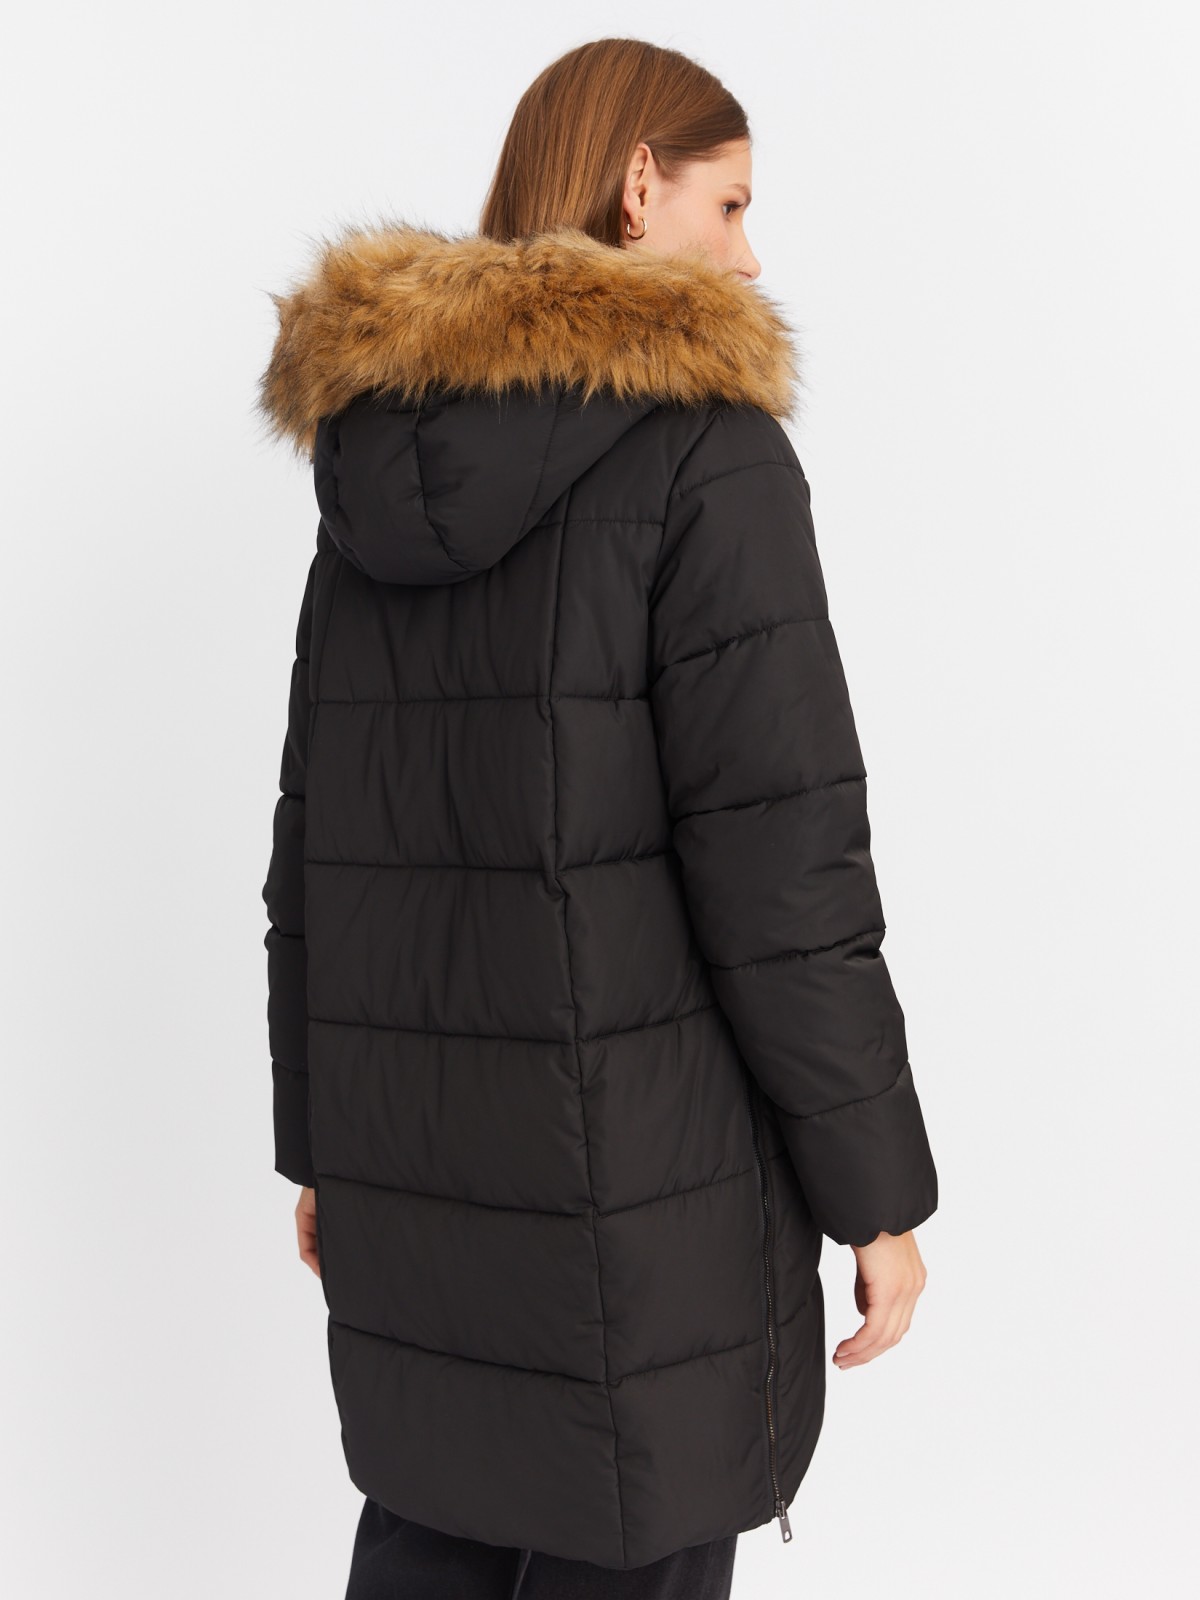 Тёплая куртка-пальто с капюшоном и боковыми шлицами на молниях zolla 022425212014, цвет черный, размер XS - фото 6